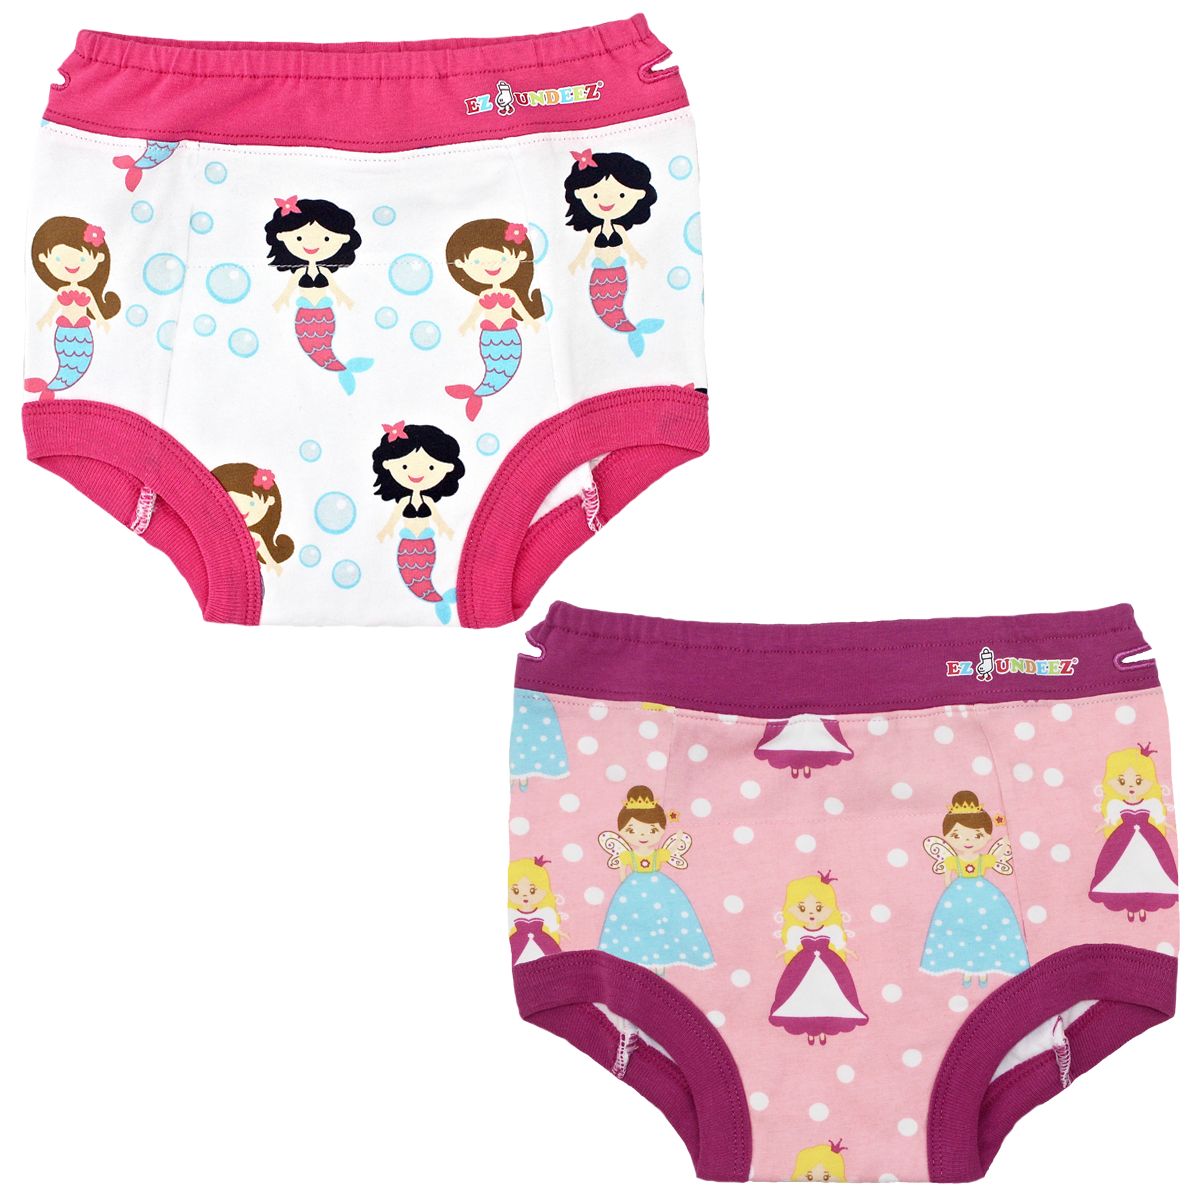 girls toddler training underwear – Ez Sox